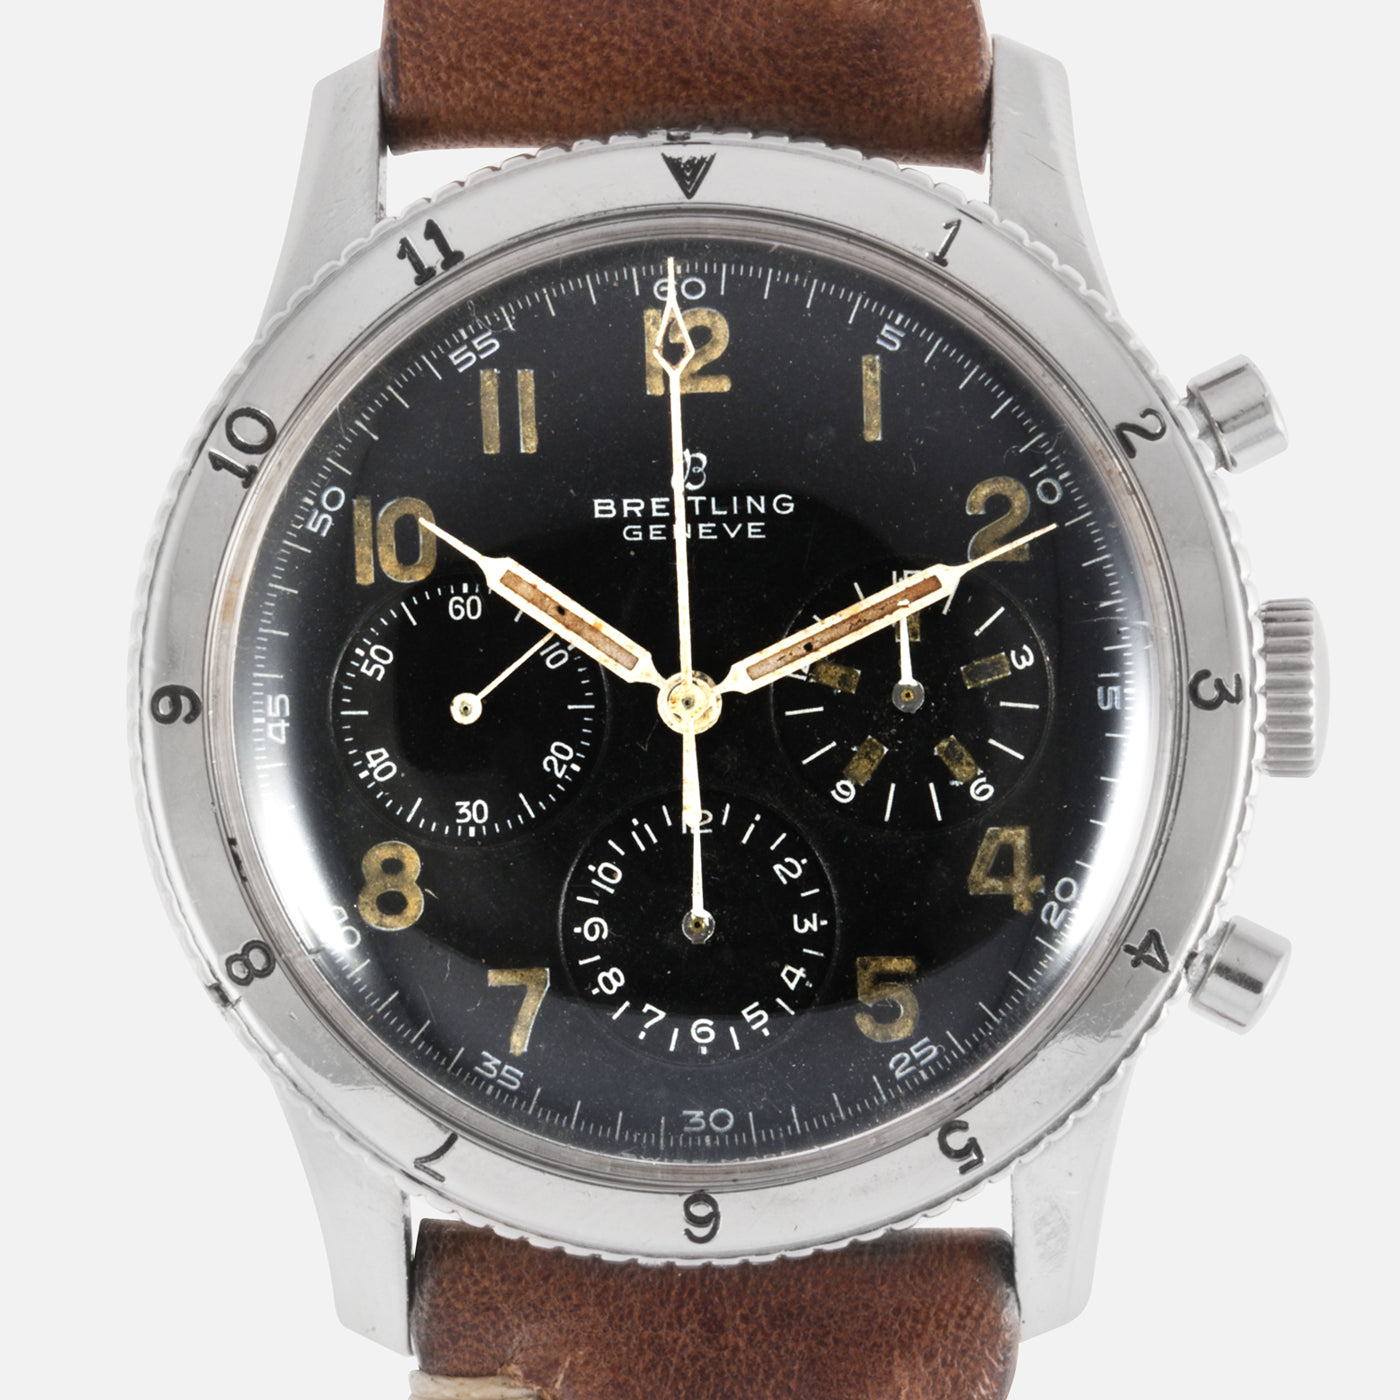 Breitling AVI Co-Pilot 765 Vintage Pilot Chronograph Watch | S.Song ...